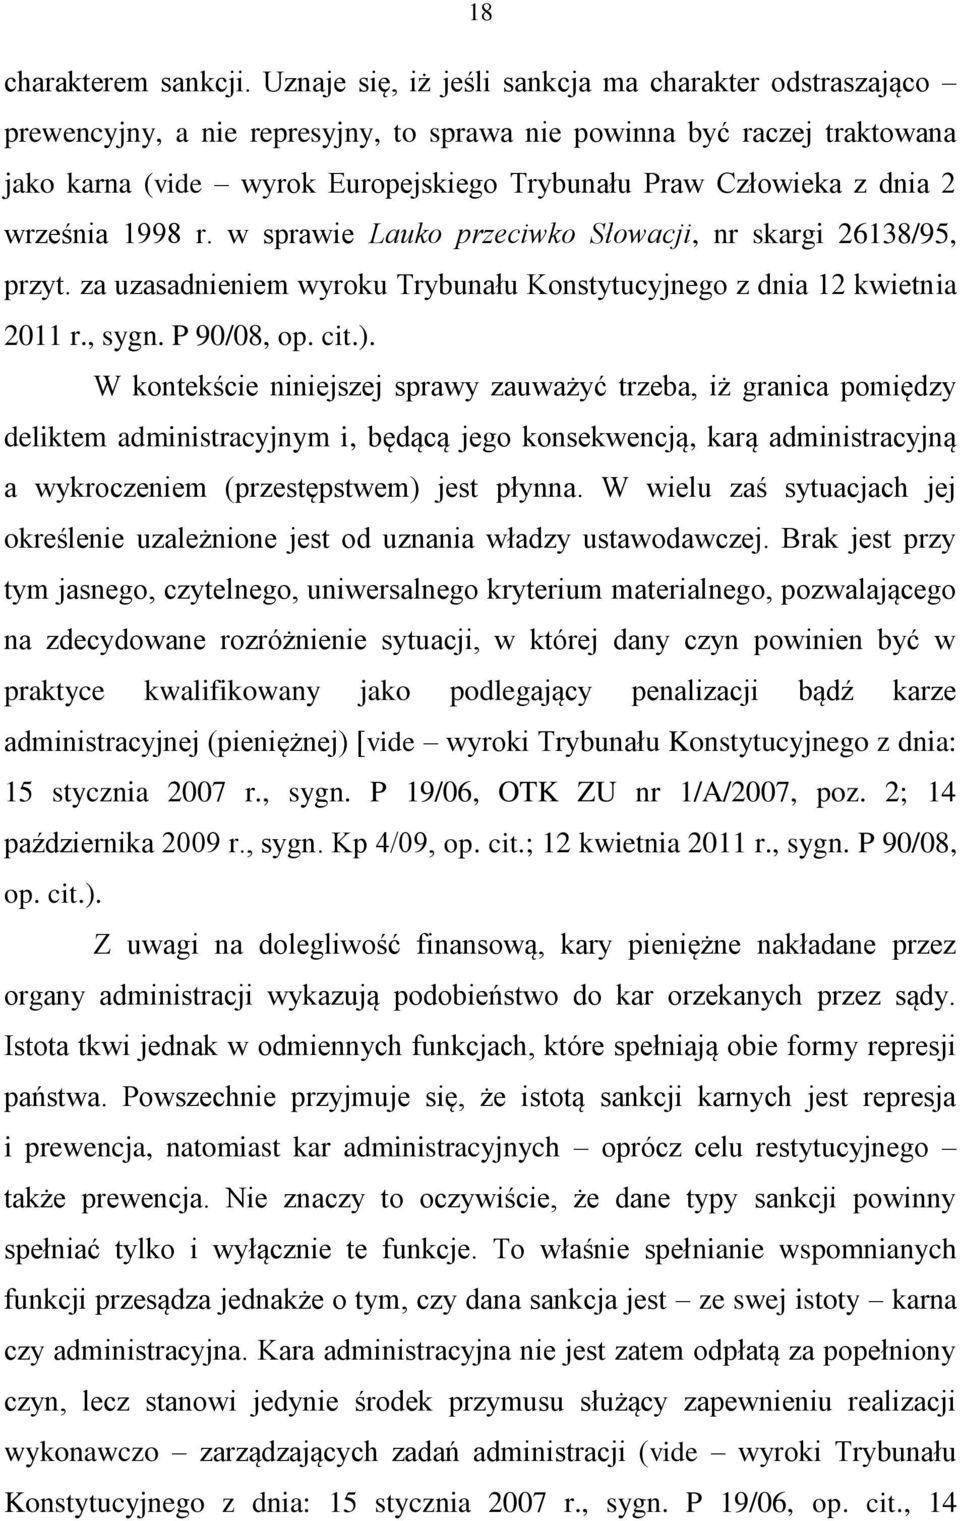 2 września 1998 r. w sprawie Lauko przeciwko Słowacji, nr skargi 26138/95, przyt. za uzasadnieniem wyroku Trybunału Konstytucyjnego z dnia 12 kwietnia 2011 r., sygn. P 90/08, op. cit.).